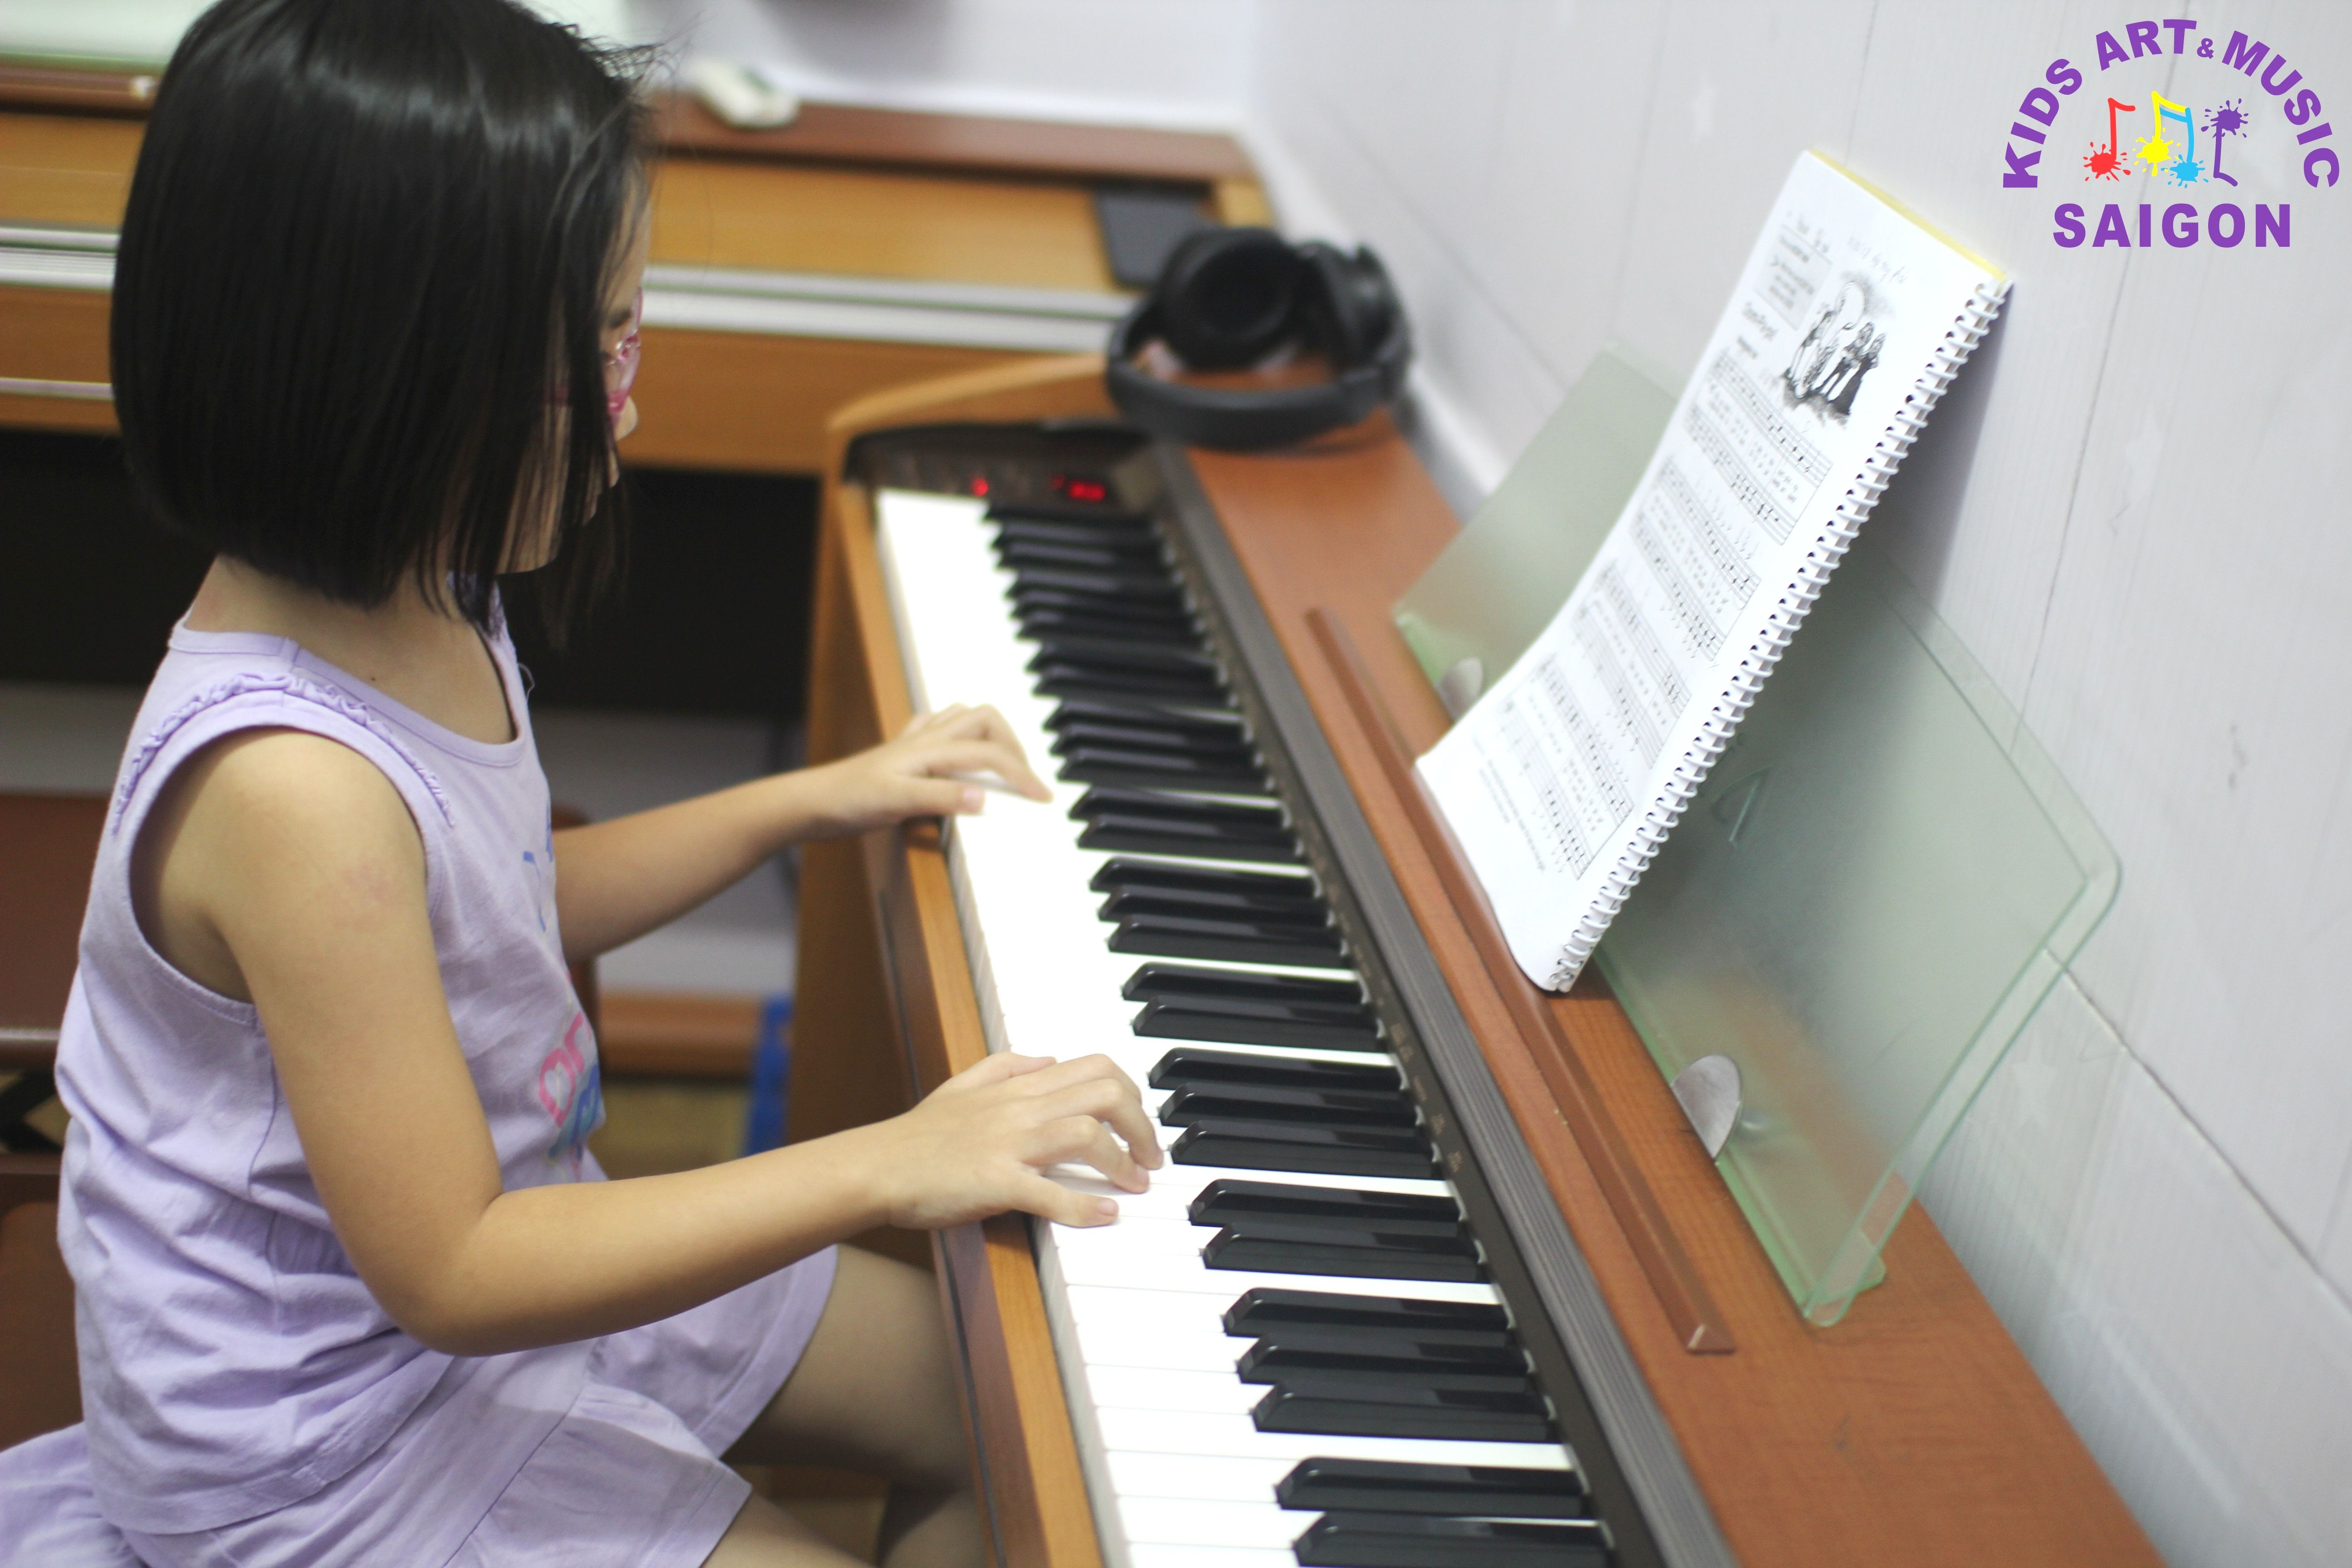 Lớp học Piano ở quận 1 mách ba mẹ một số bí quyết lựa chọn Piano hay Organ? hình ảnh 2